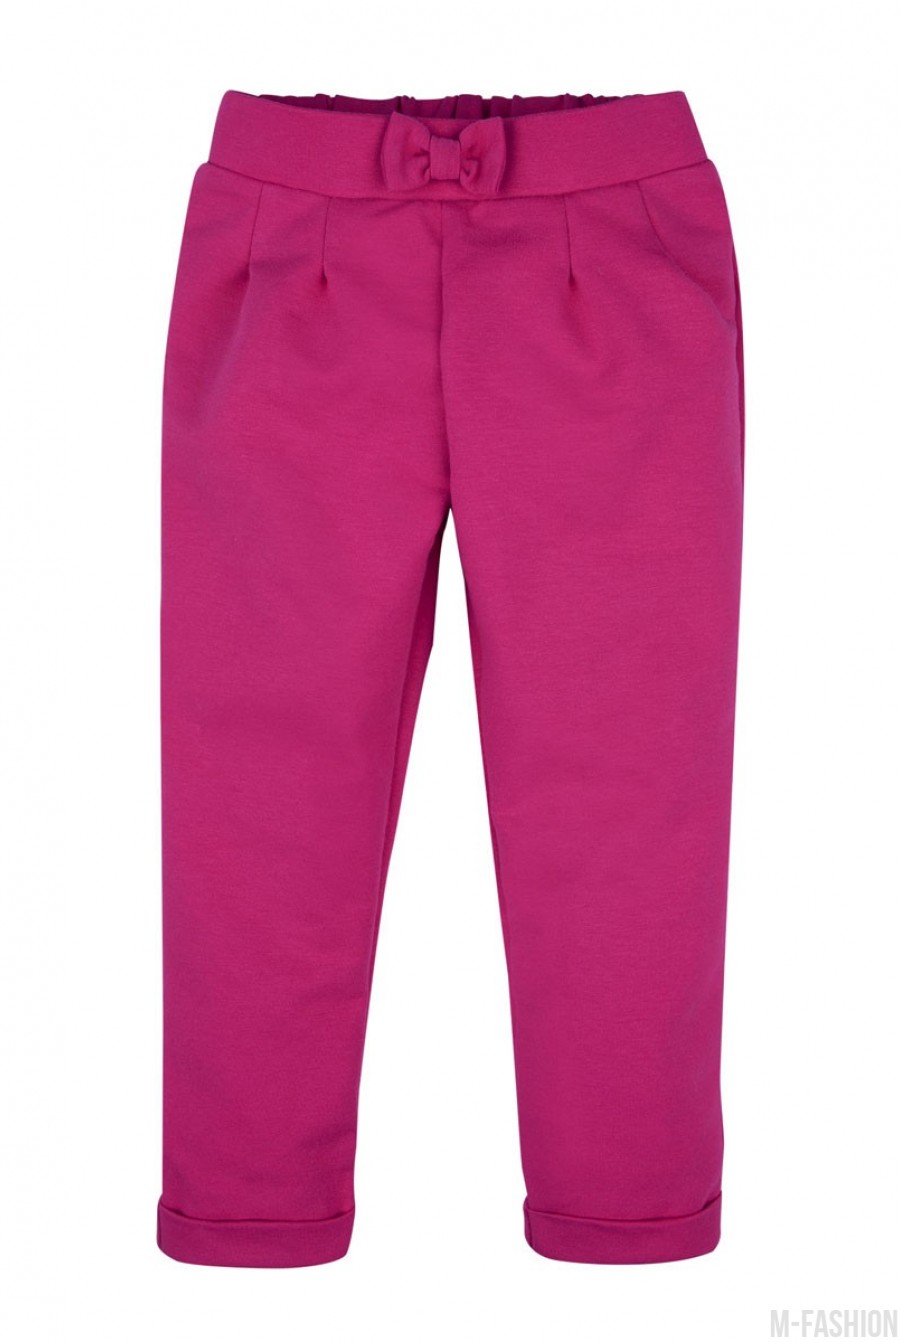 Розовые брюки из футера с бантом на резинке и подворотами - Фото 1